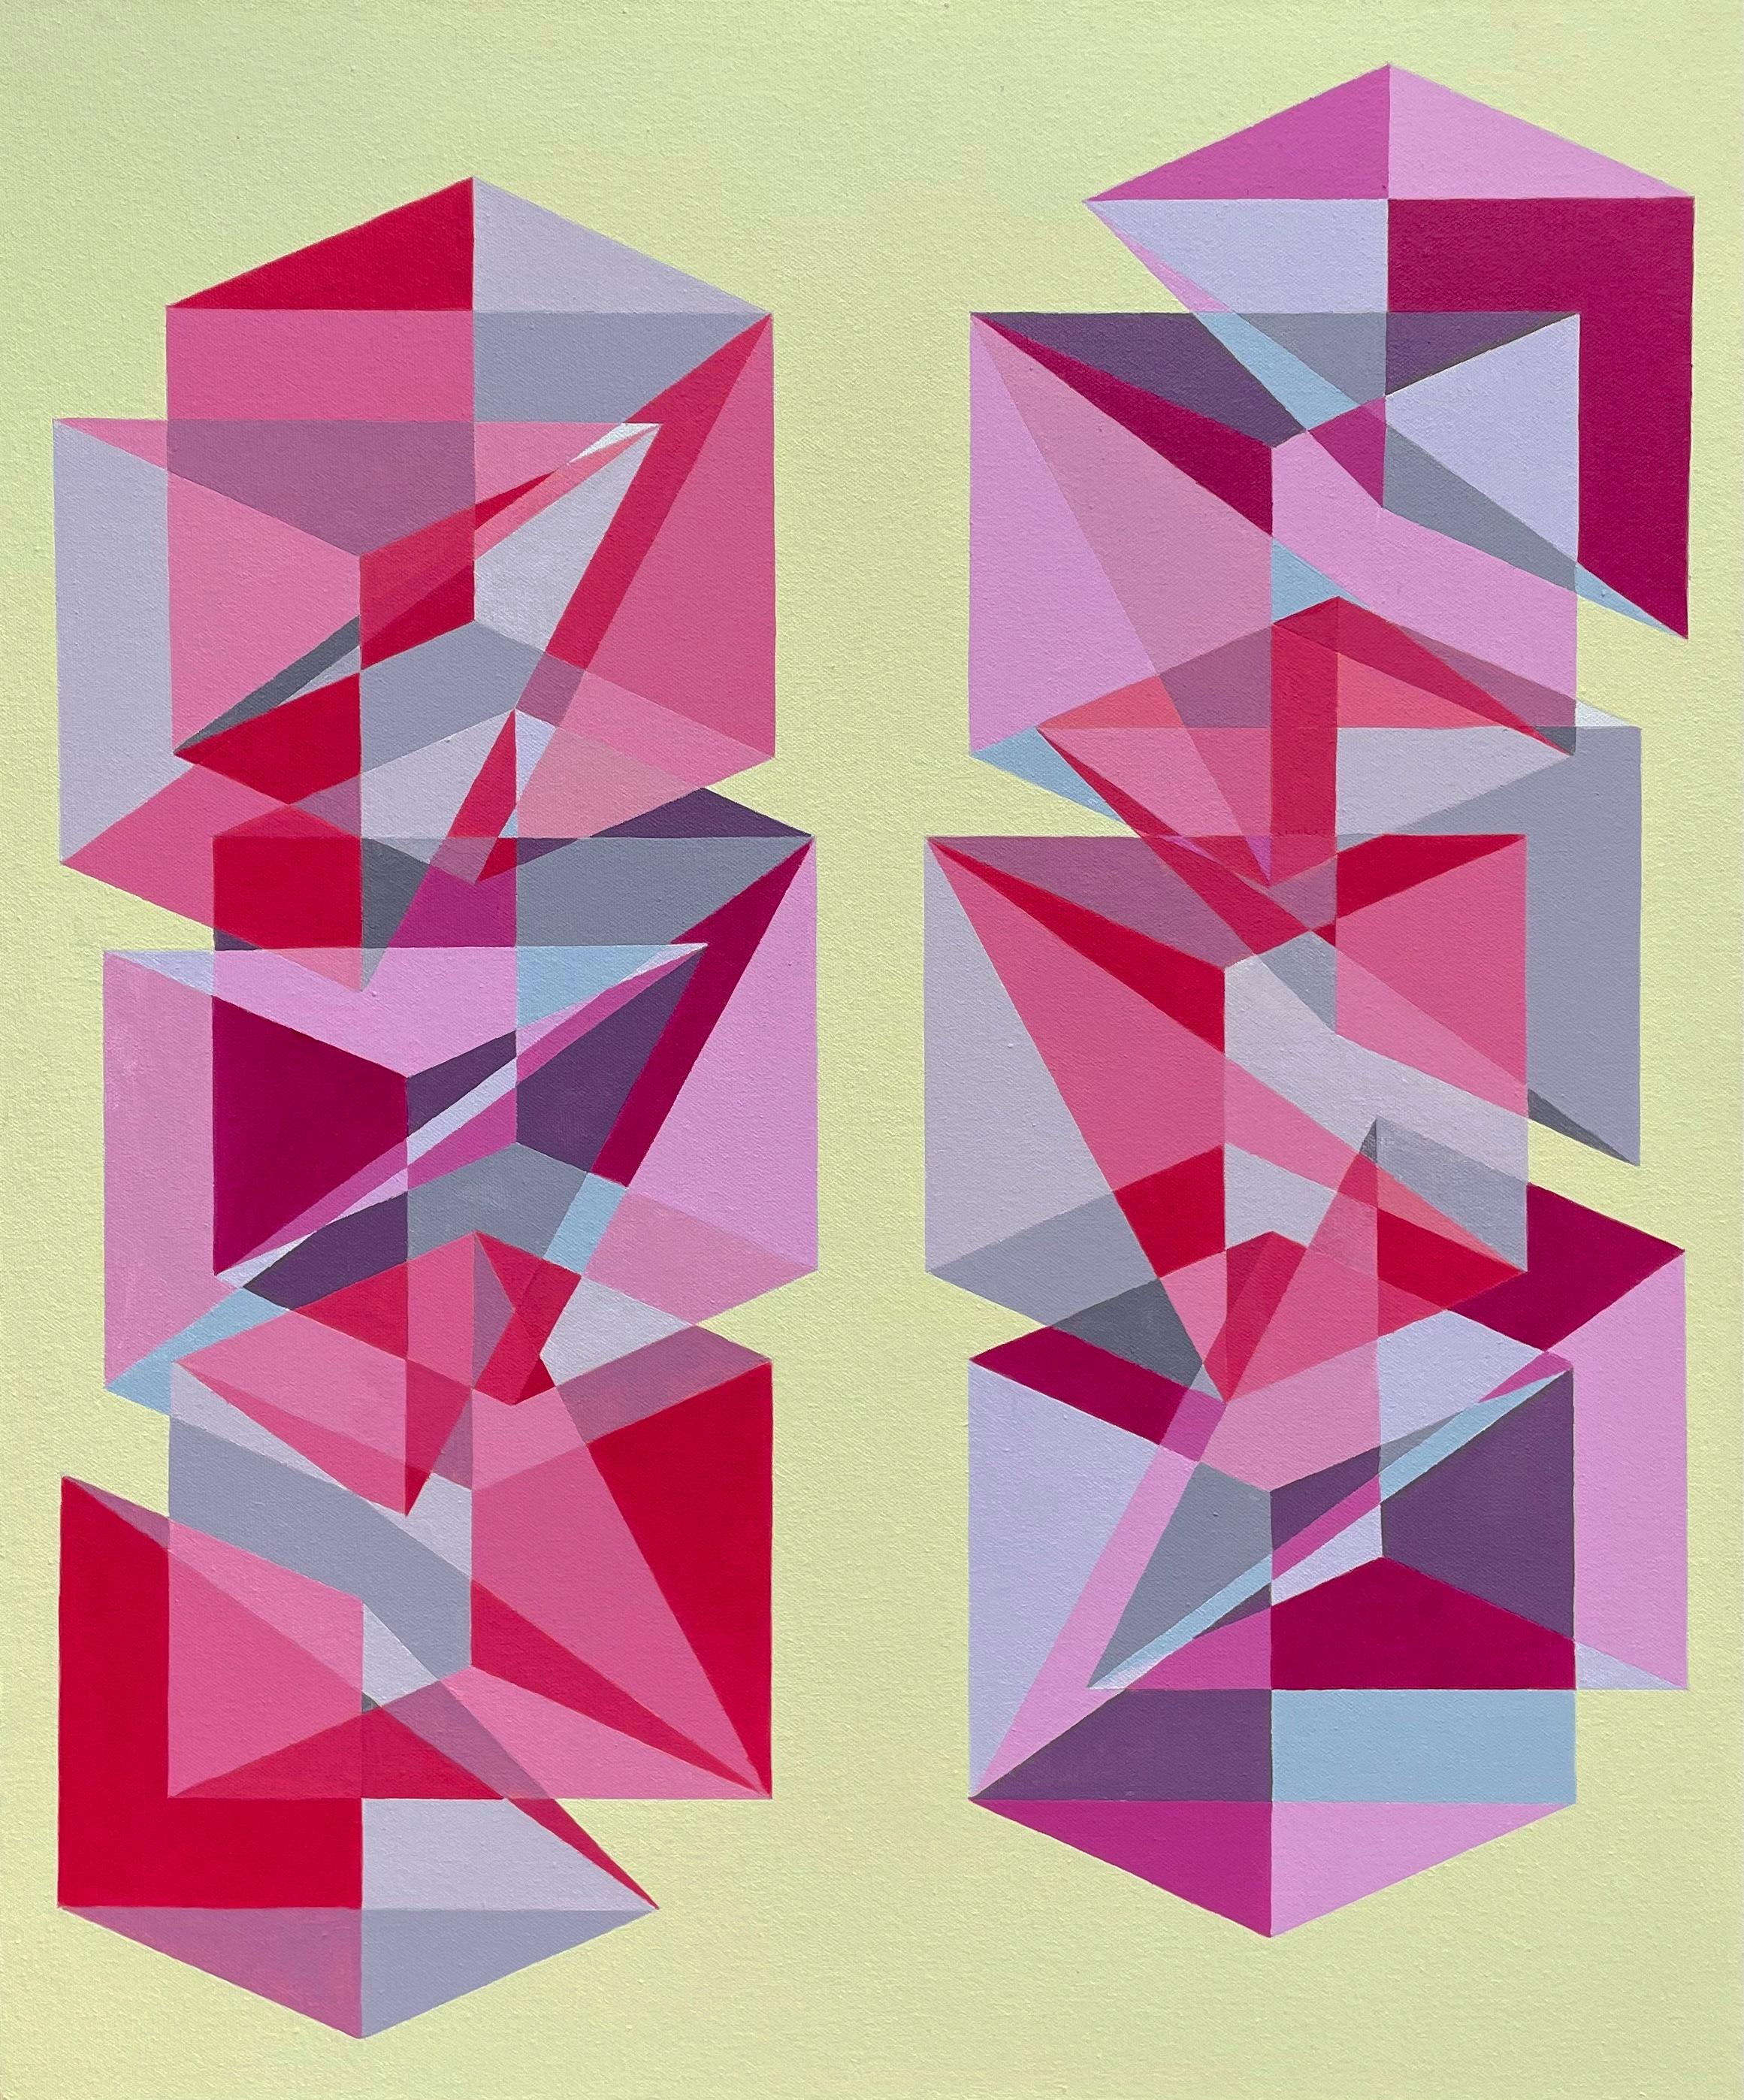 Abstract Painting Benjamin Weaver - Peinture Pop Art abstraite gomtrique Op Art en jaune et rouge avec cubes et triangles